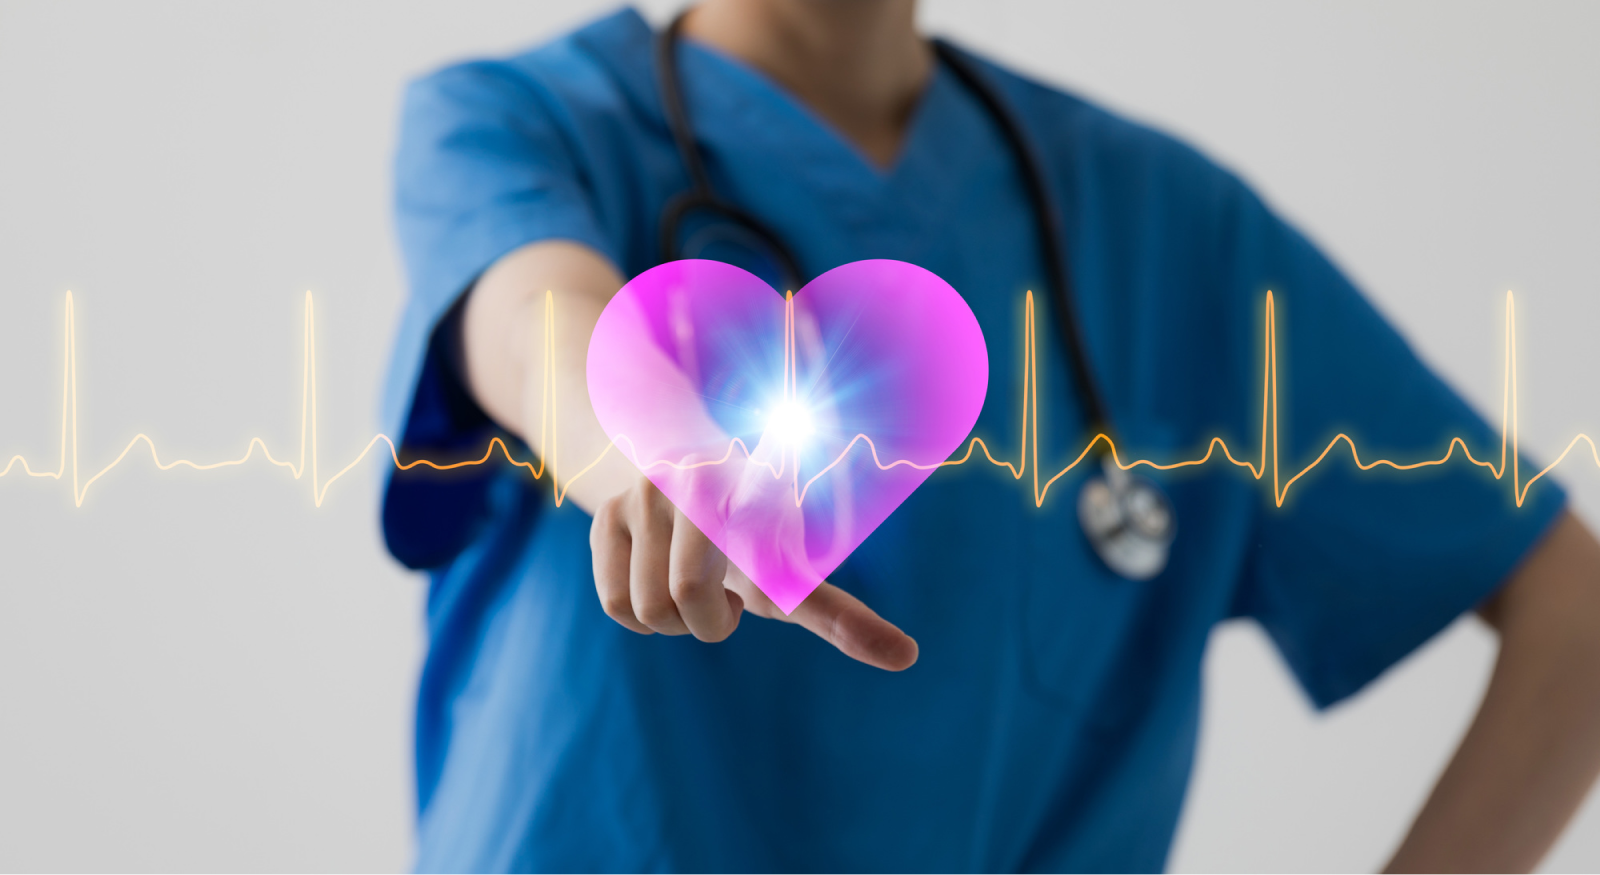 【Lancet】SGLT2阻害薬で心不全患者の心血管死と入院リスクが減少